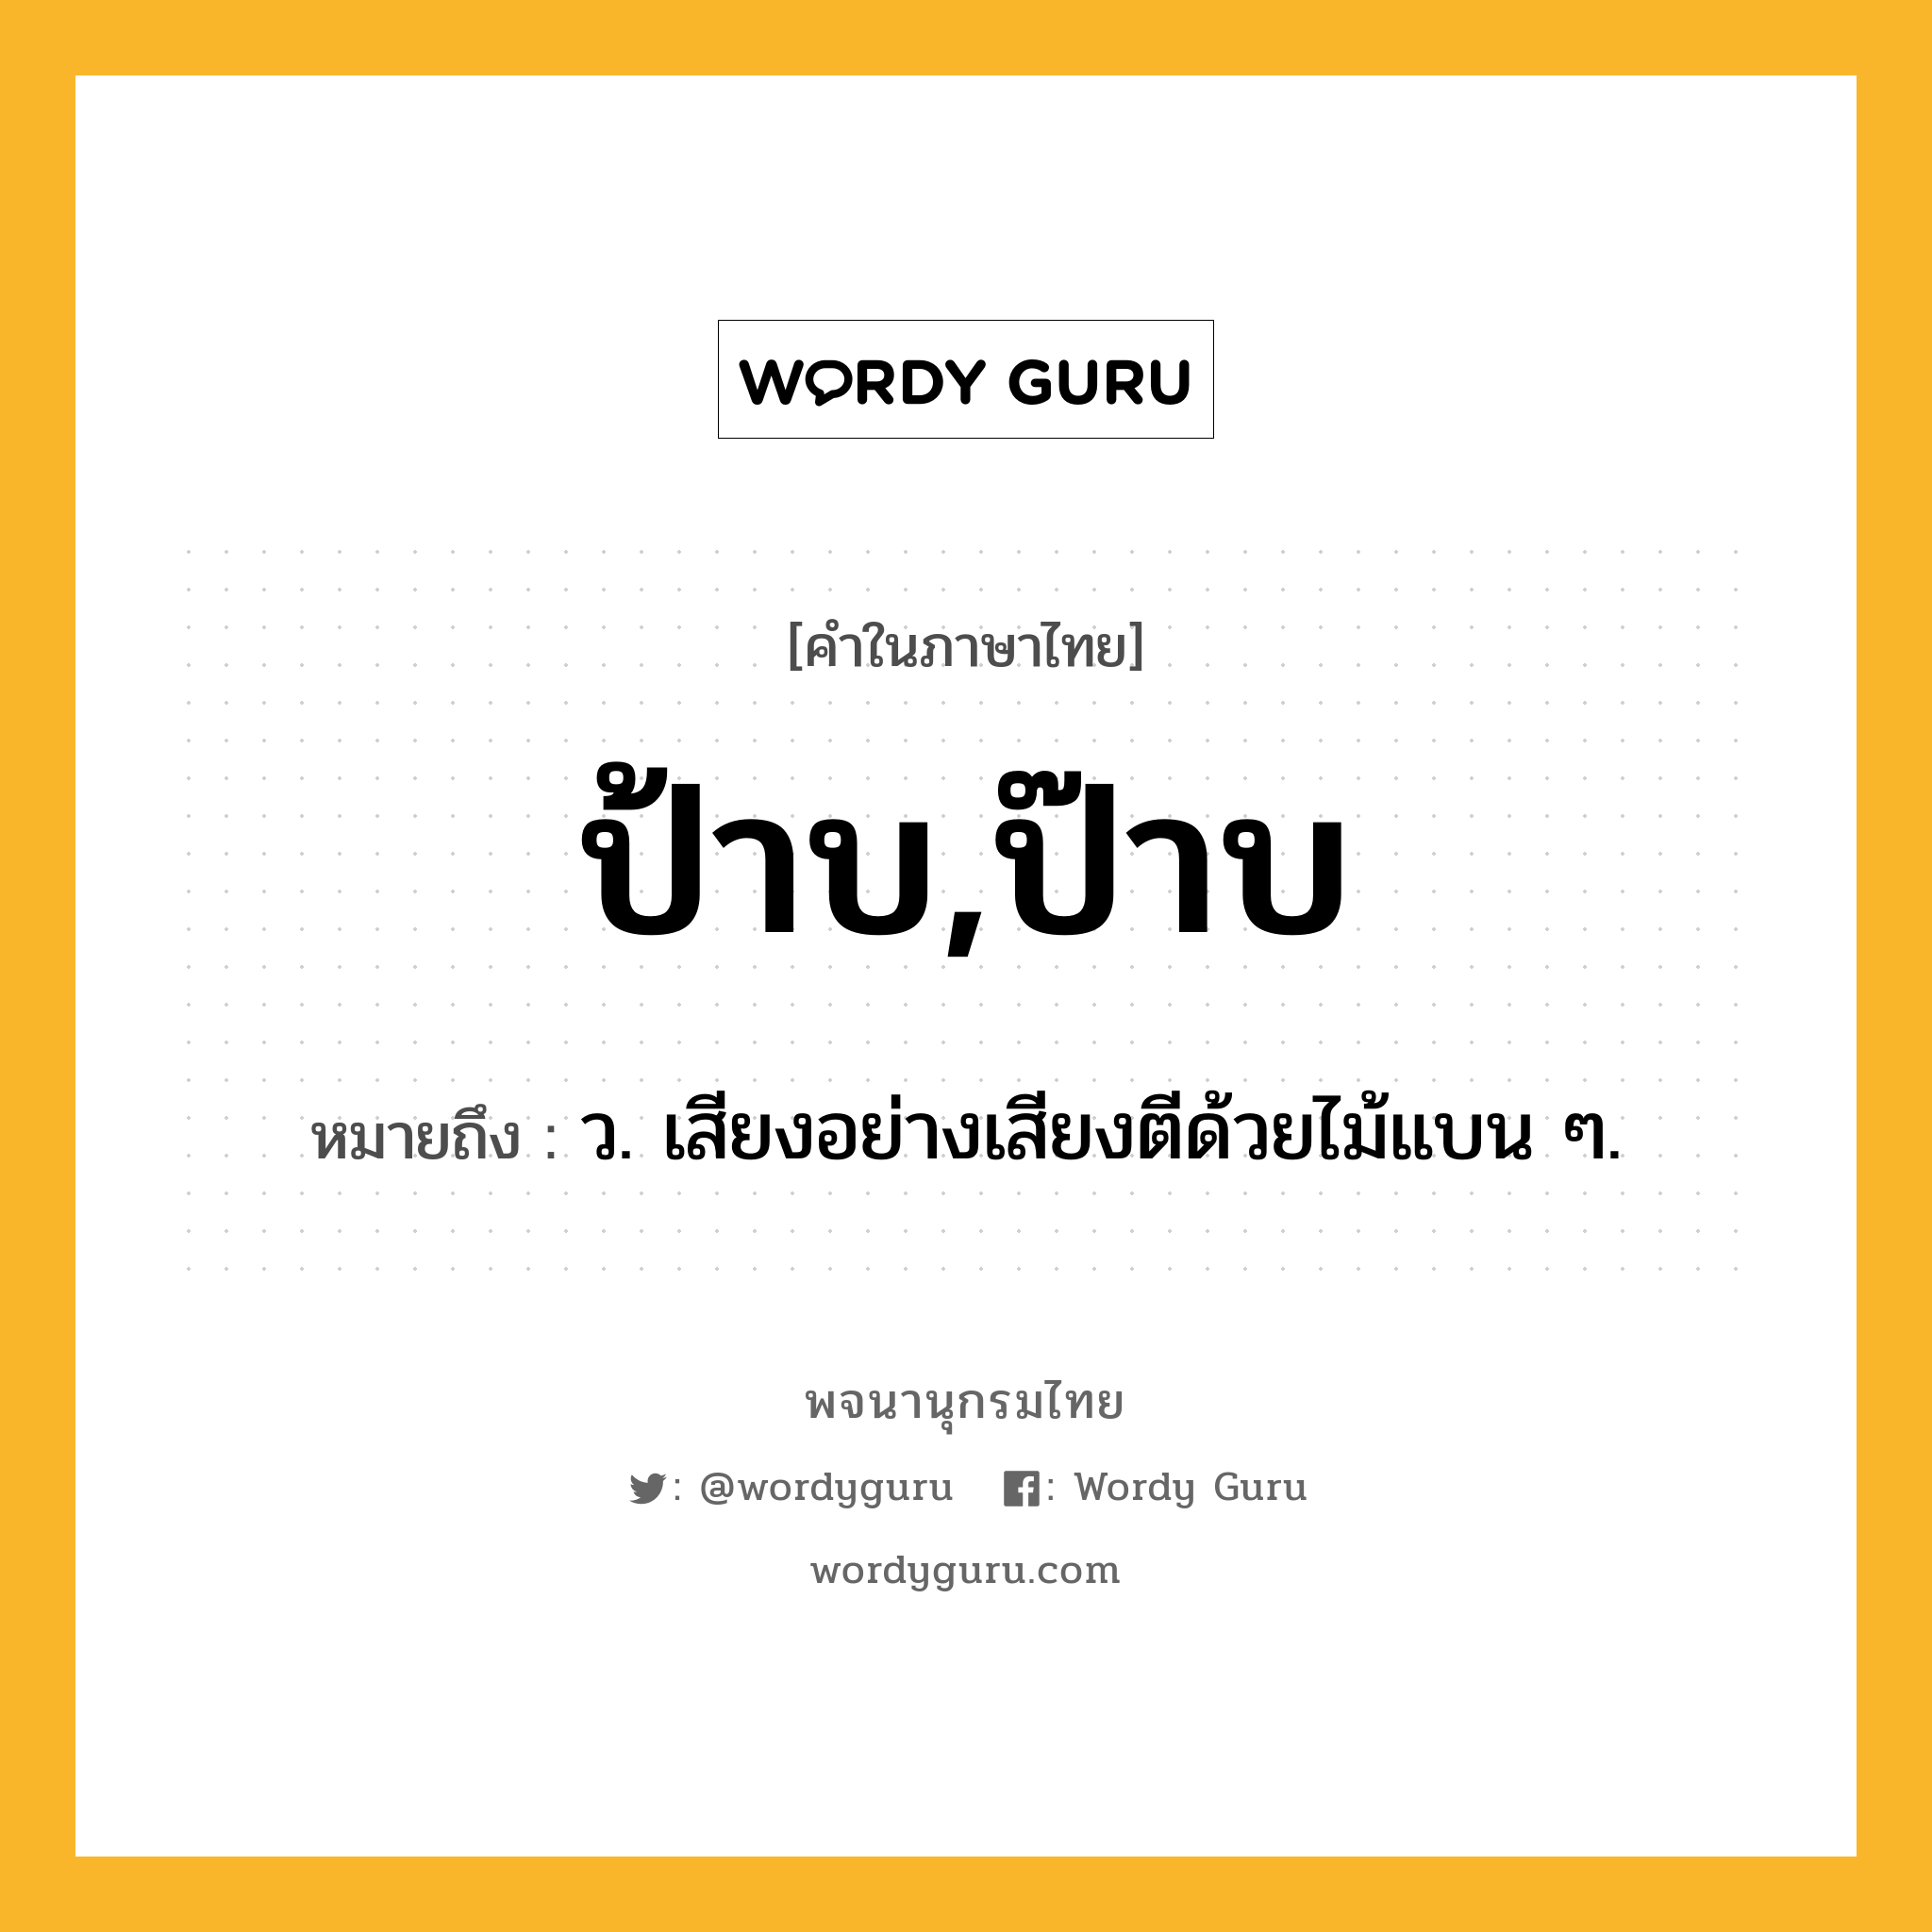 ป้าบ,ป๊าบ หมายถึงอะไร?, คำในภาษาไทย ป้าบ,ป๊าบ หมายถึง ว. เสียงอย่างเสียงตีด้วยไม้แบน ๆ.